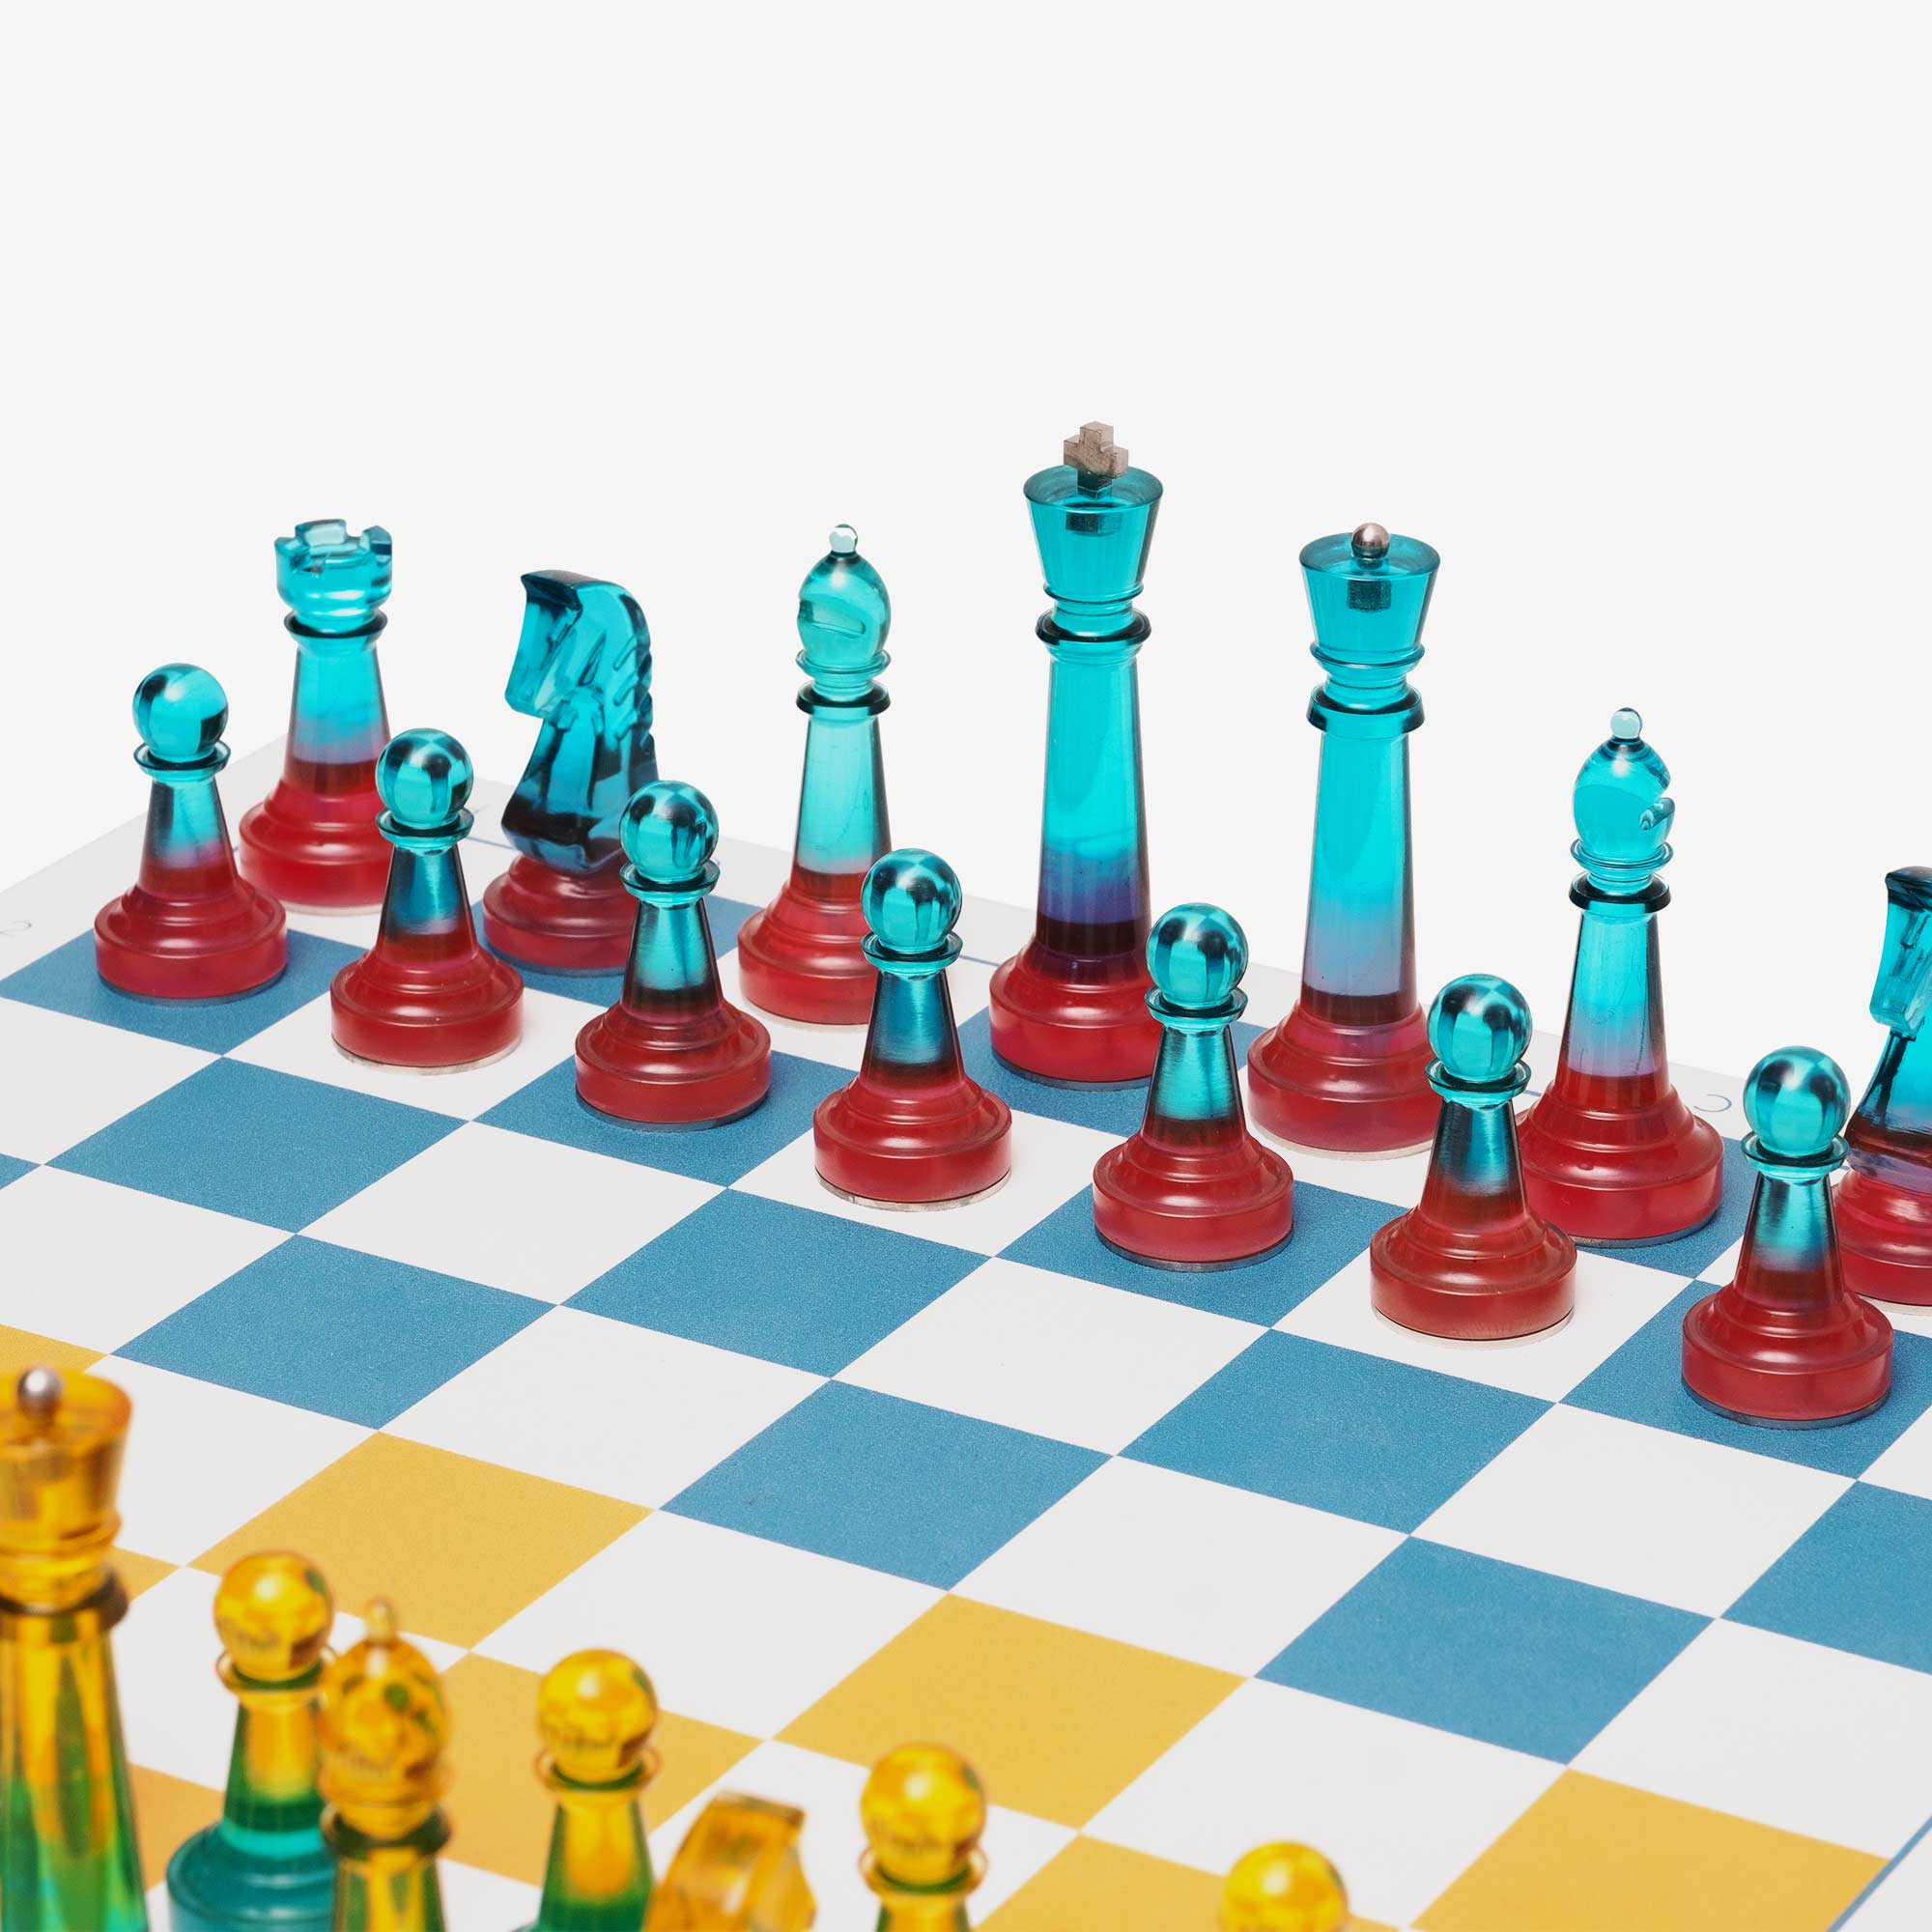 Helio Chess: Lumina version